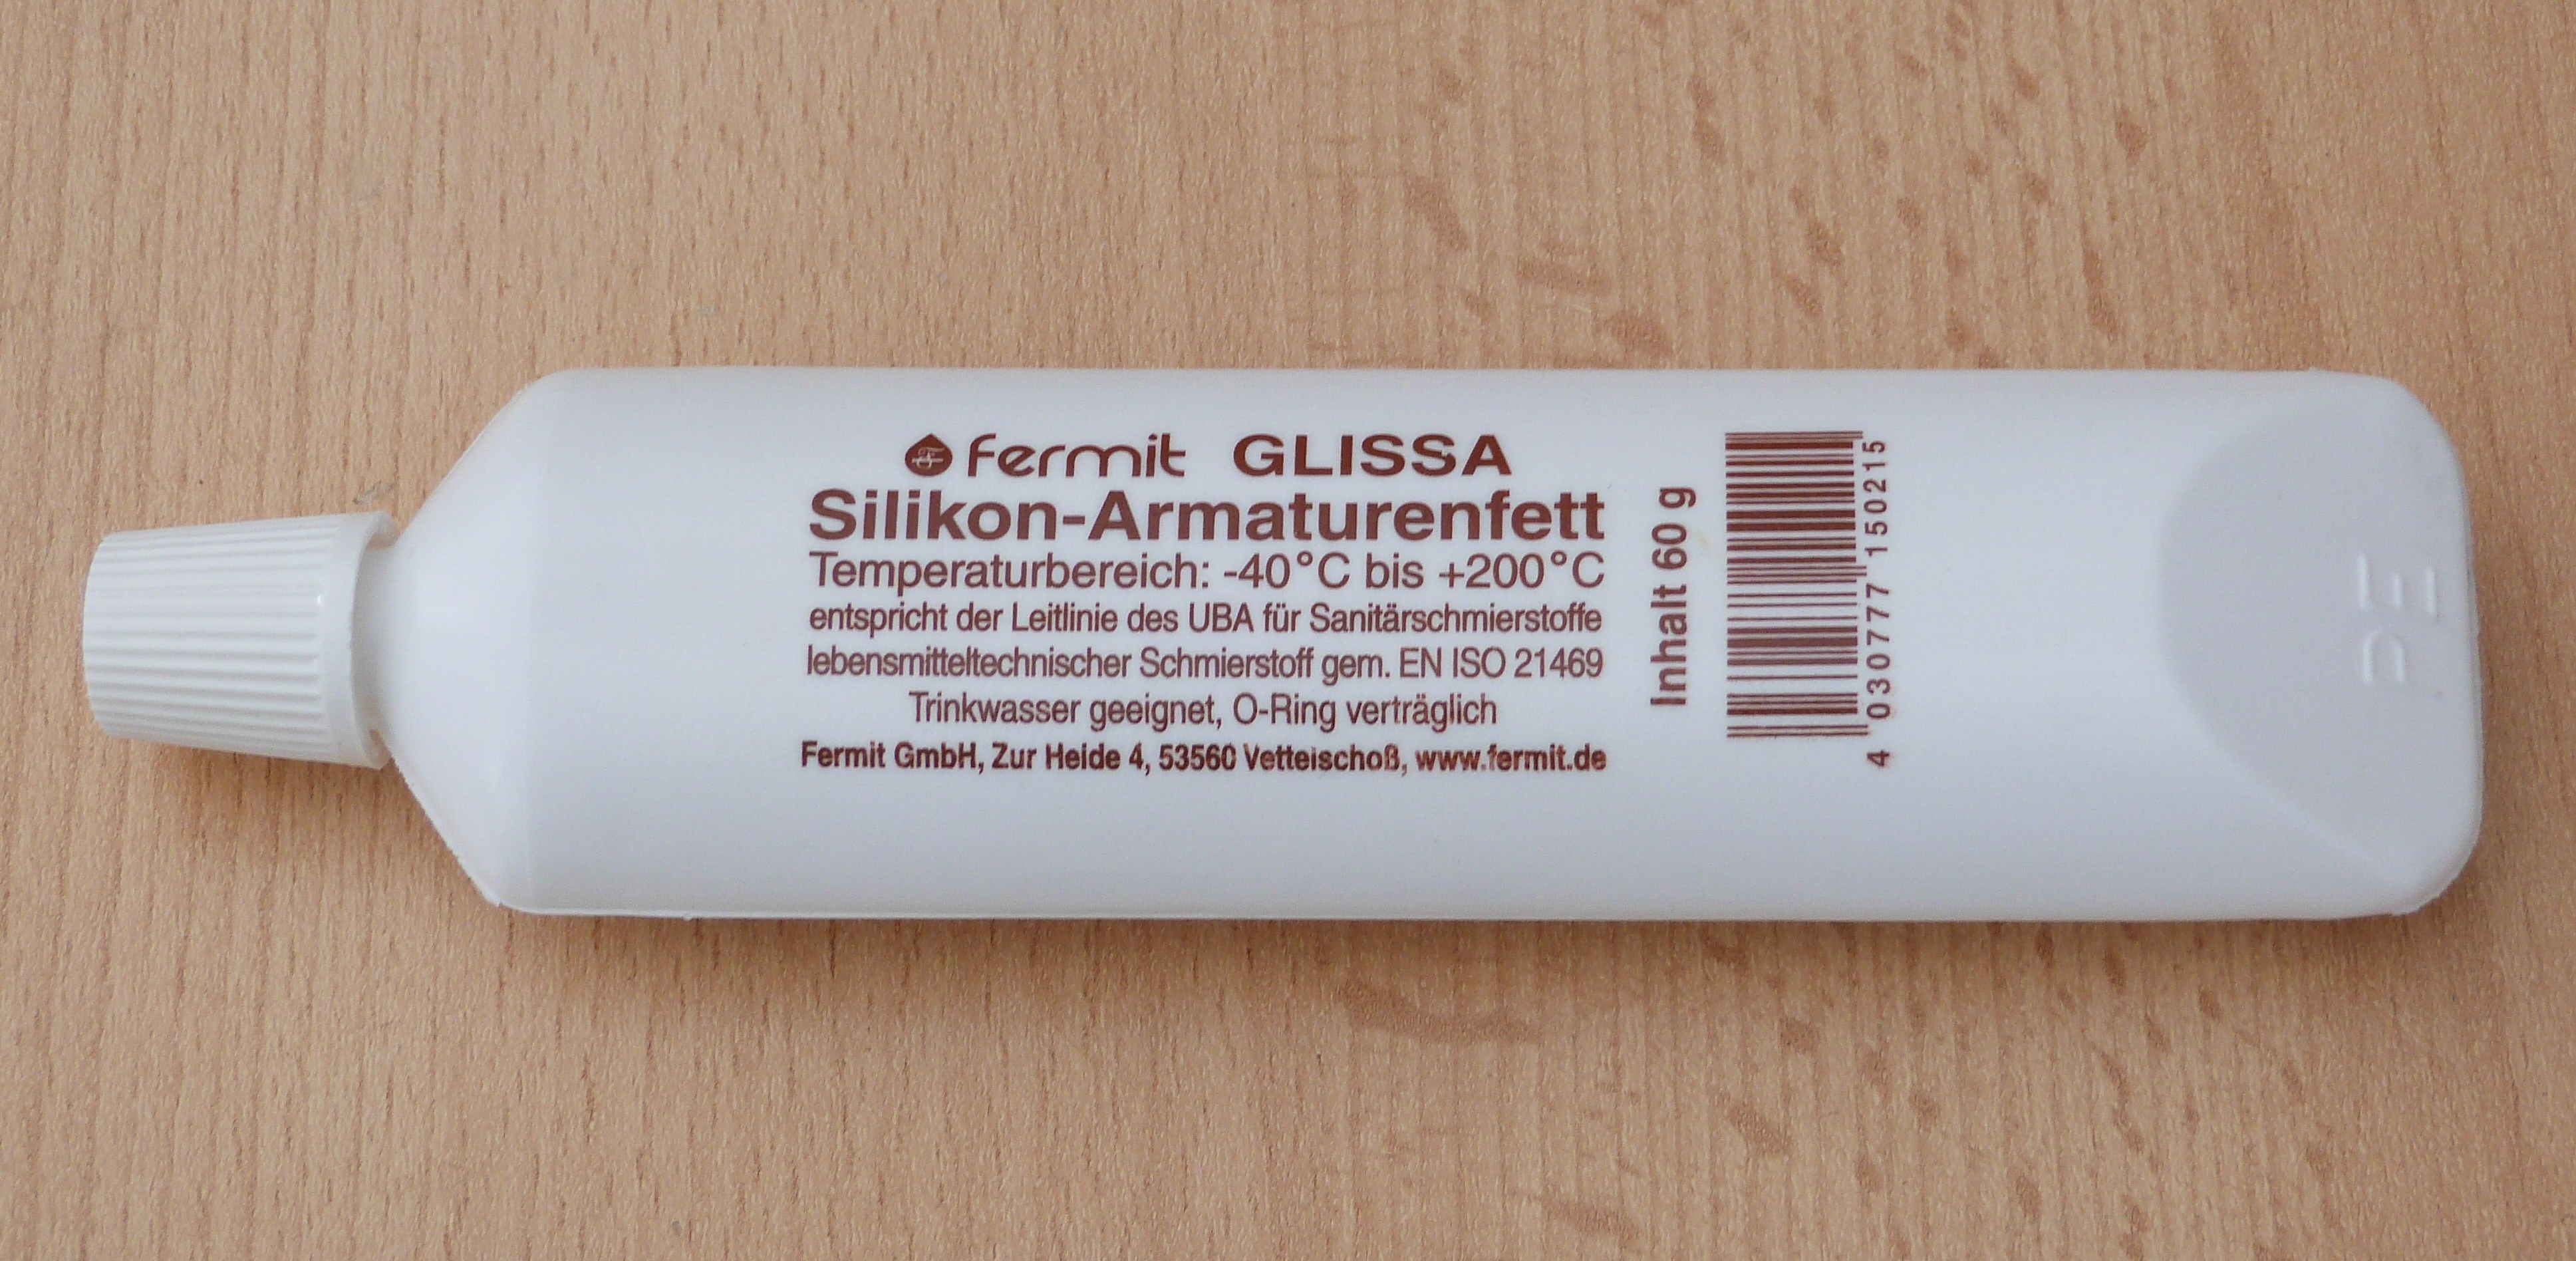 Fermit GLISSA Silikon Armaturenfett  60g Tube -20°C bis +200°C (10402#